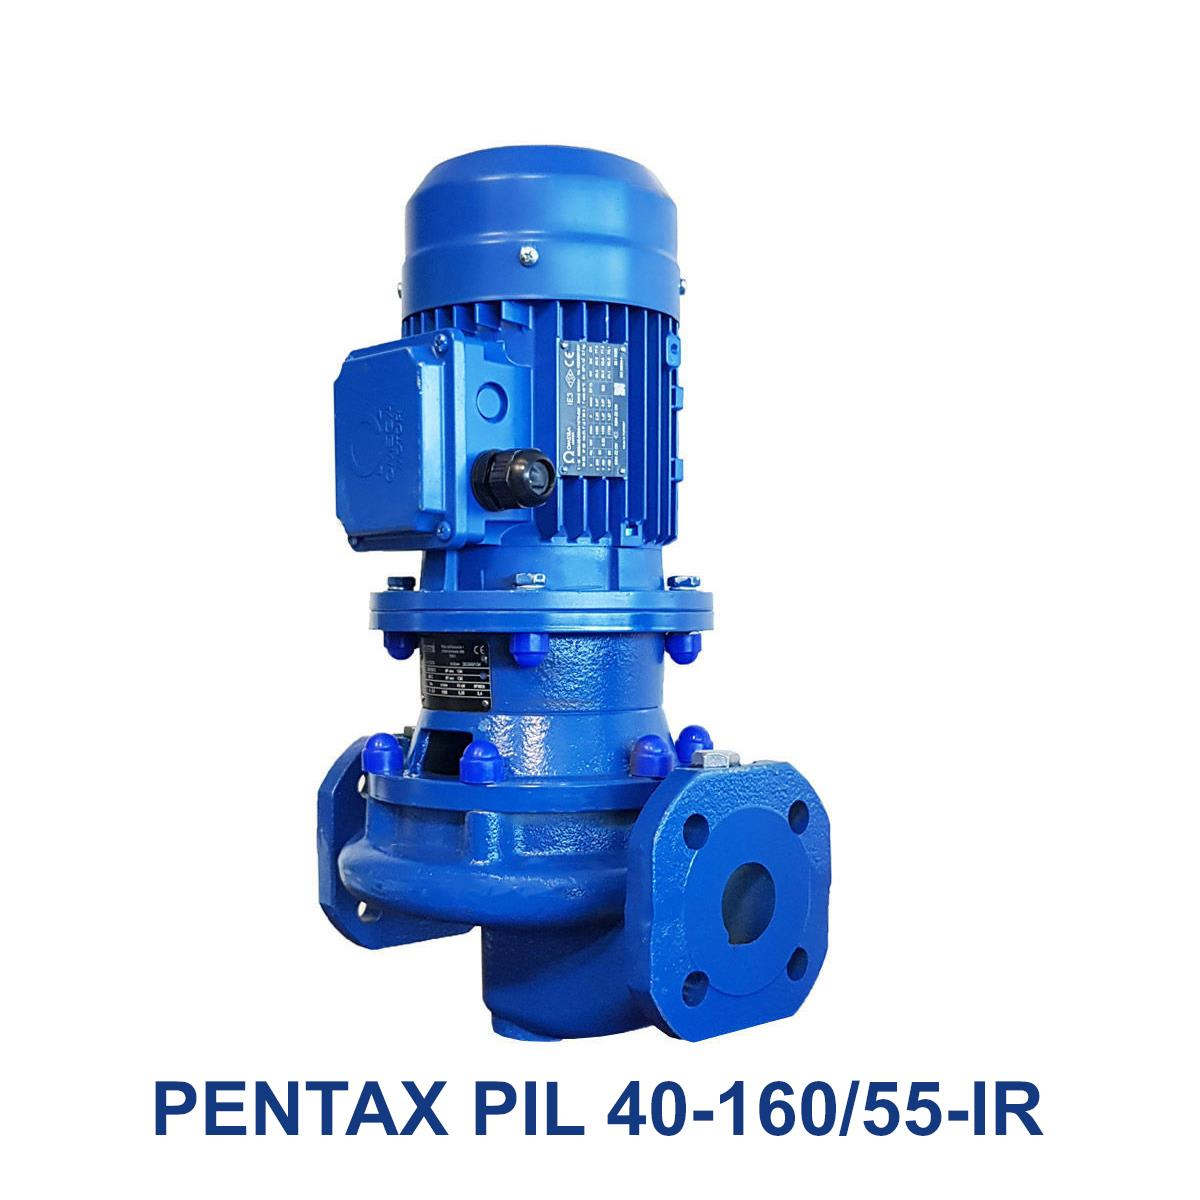 PENTAX-PIL-40-160-55-IR